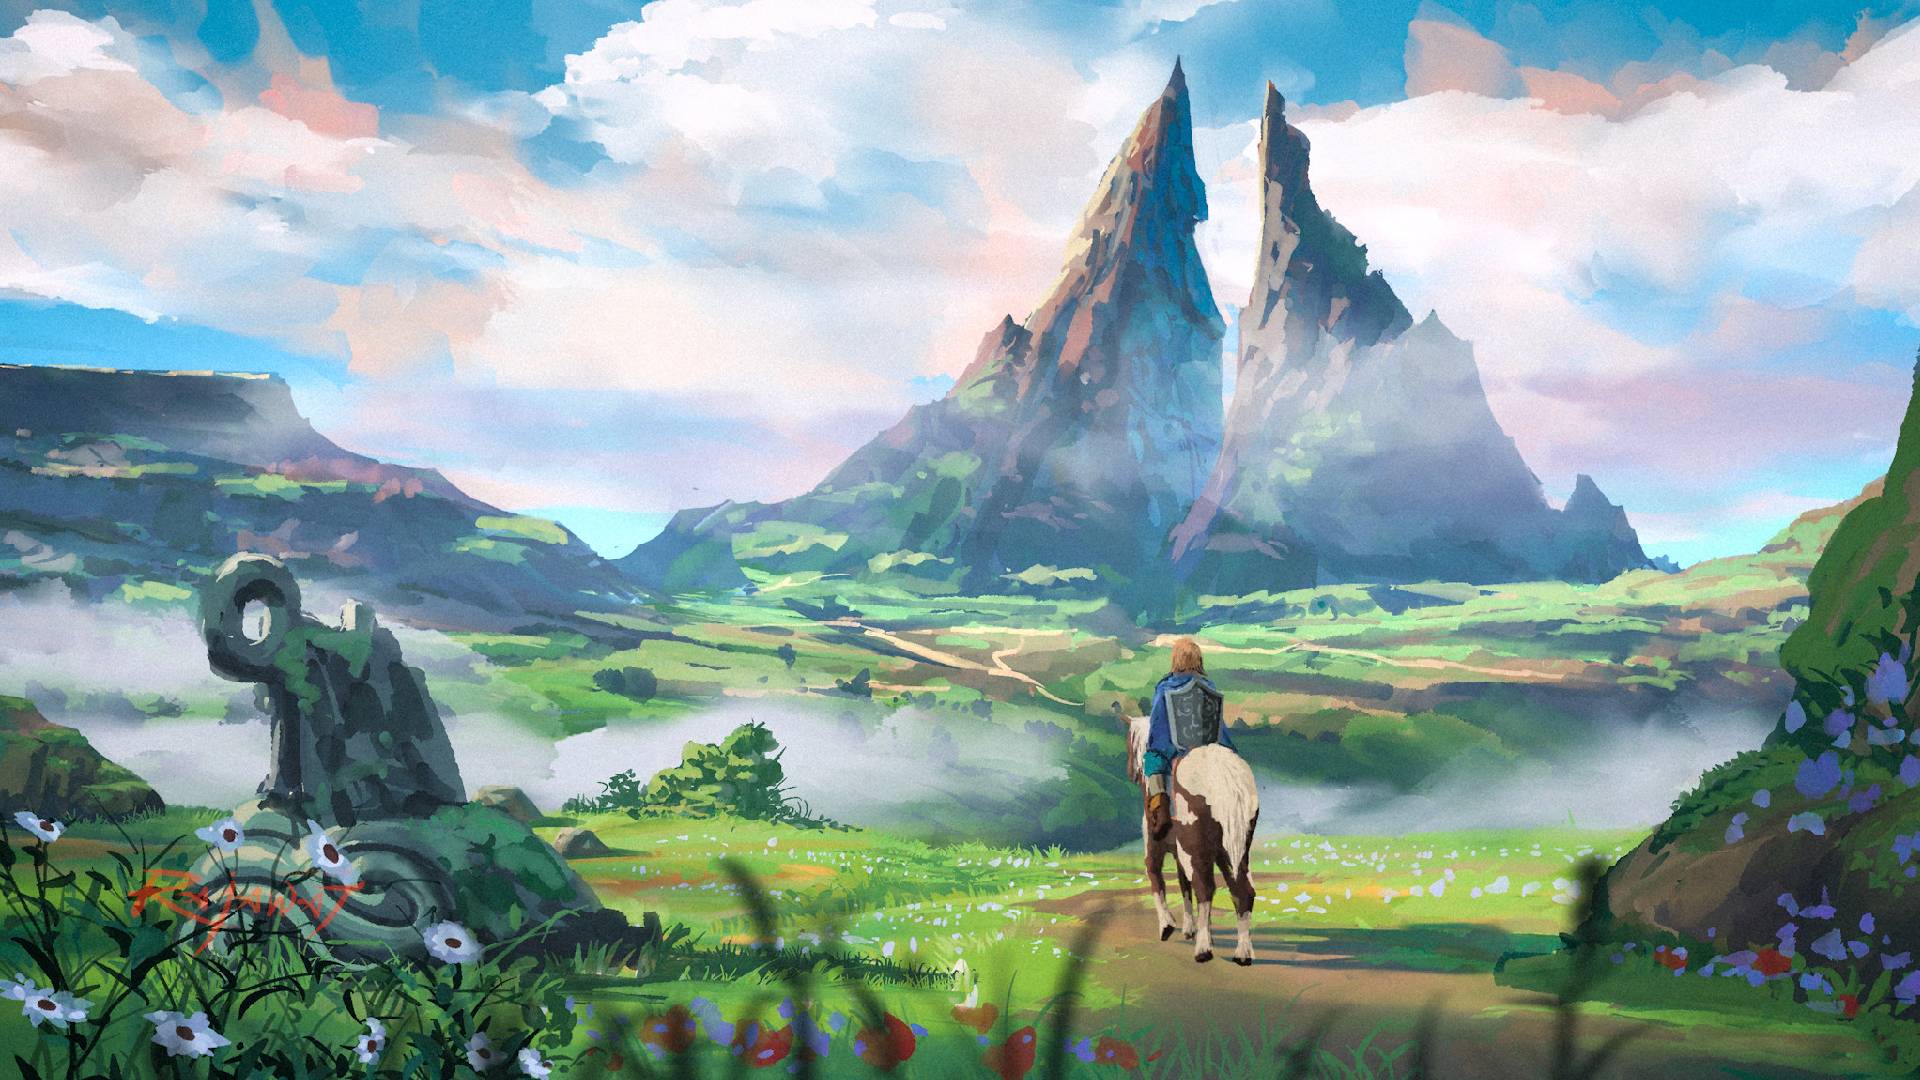 HD wallpaper: Link of The Legend of Zelda wallpaper, The Legend of Zelda:  Breath of the Wild